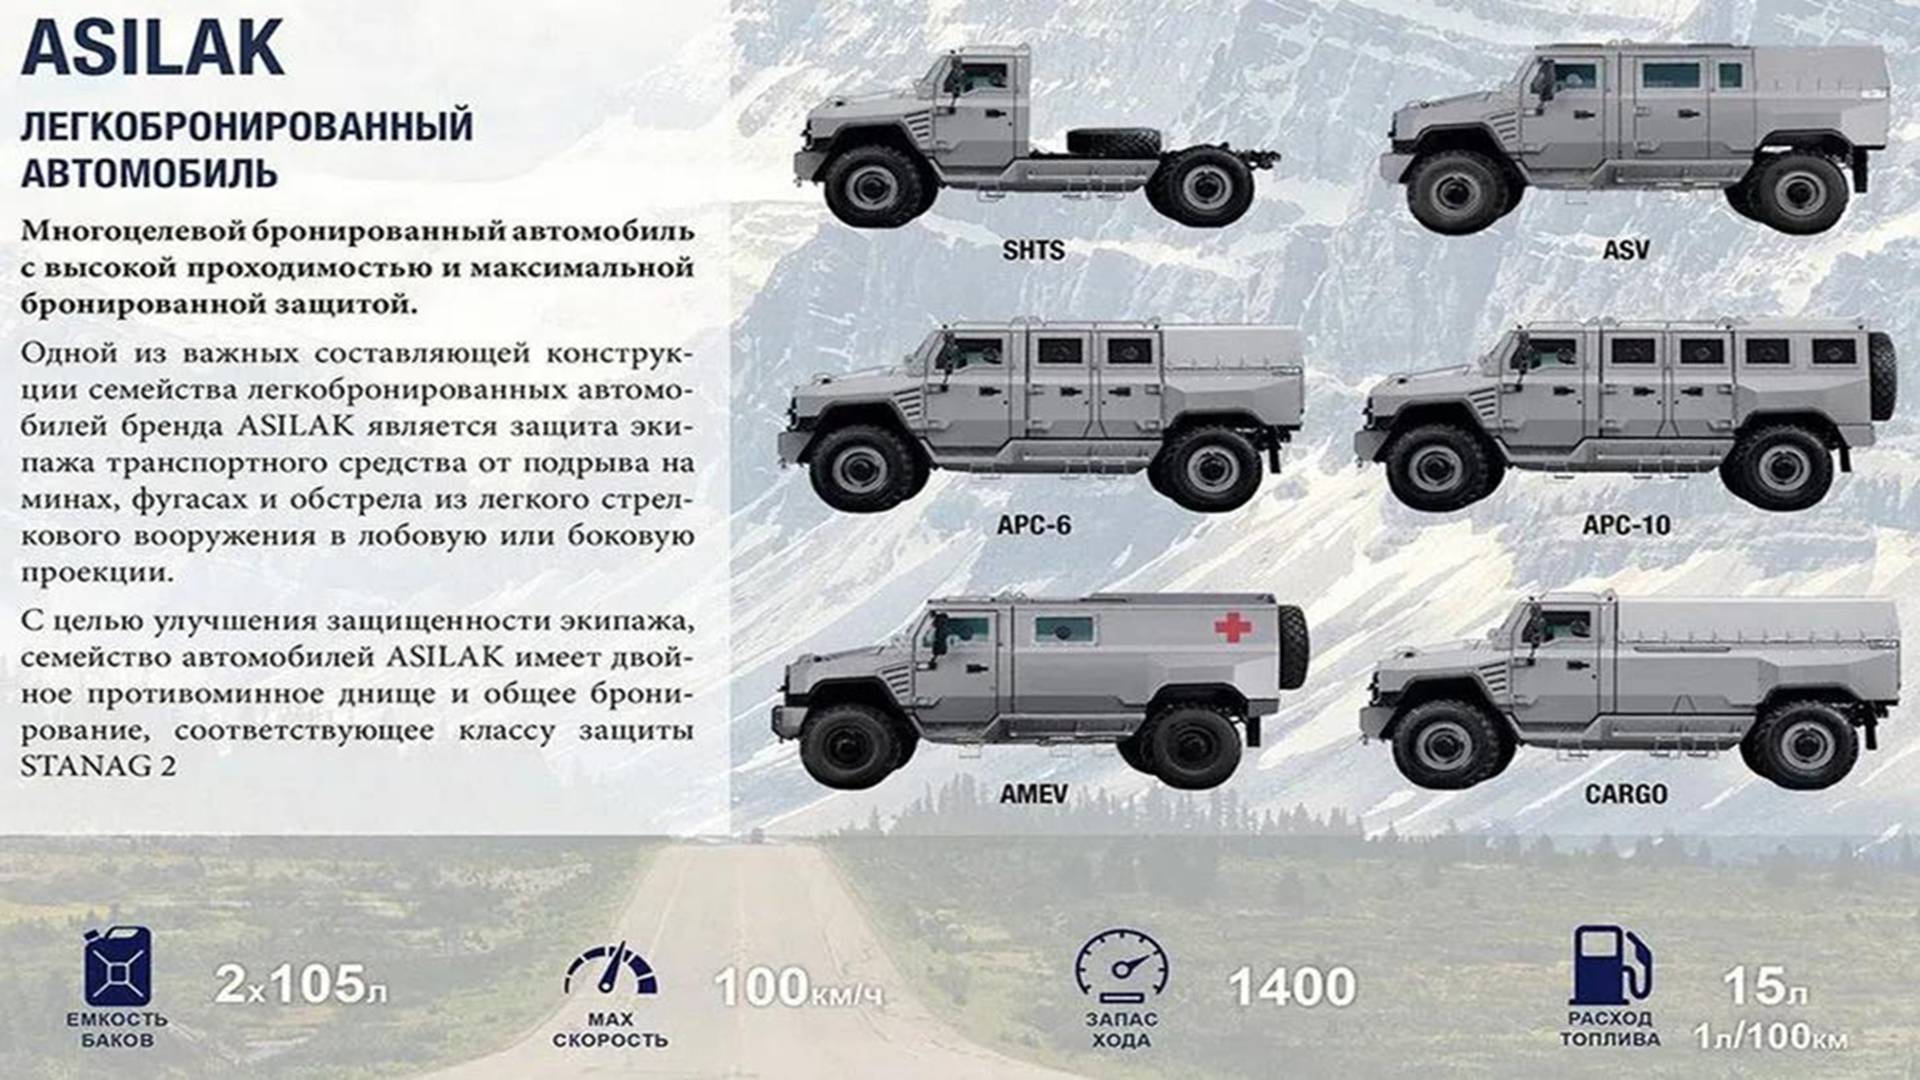 俄罗斯新款"布兰"装甲车,充满西方设计元素,备受各方赏识